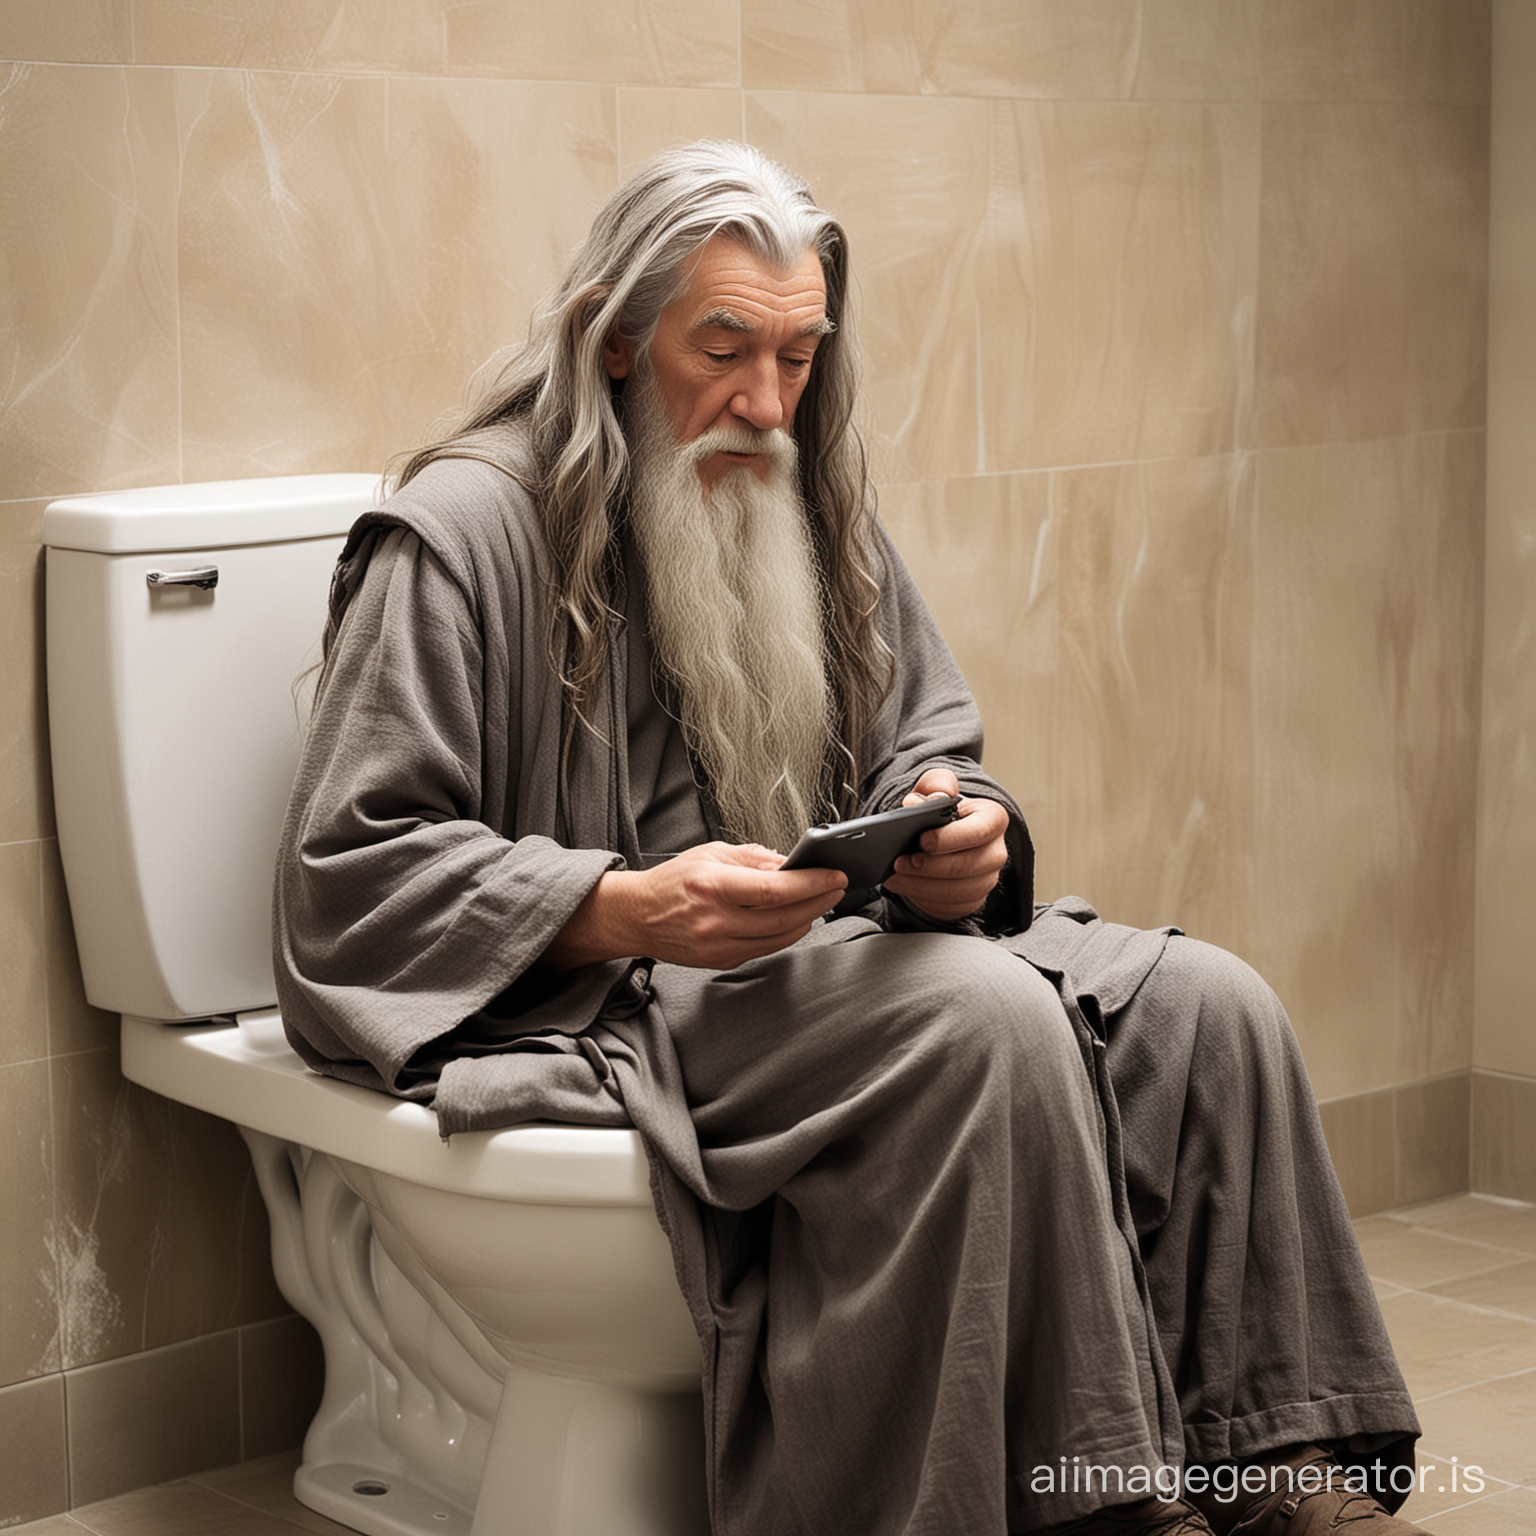 gandalf sitting on the toilet texting saruman